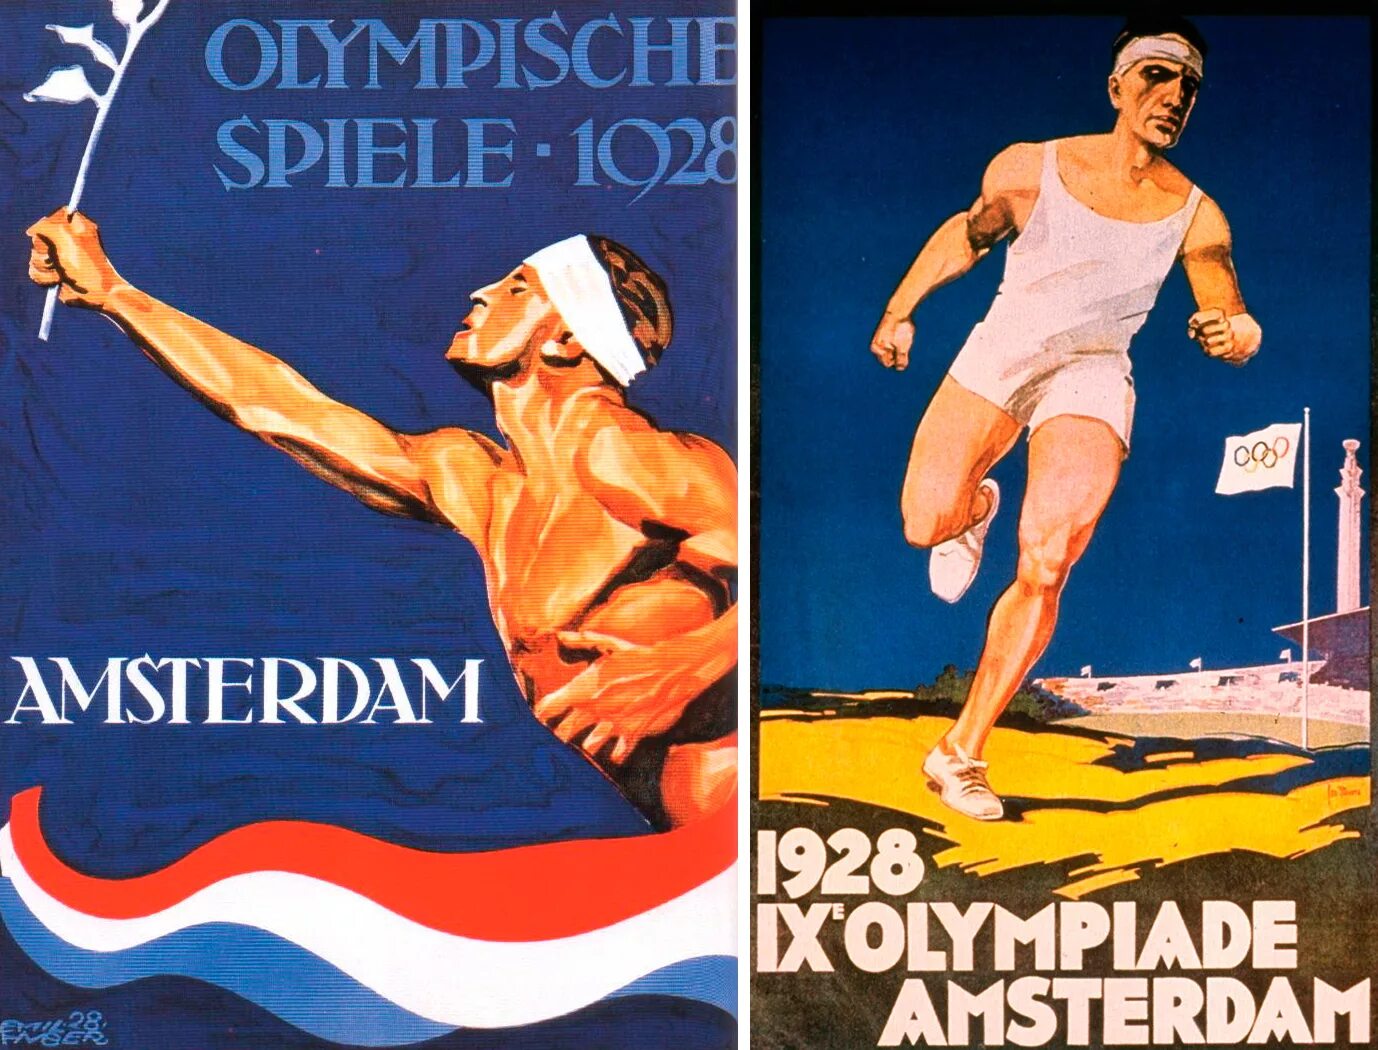 Игры IX олимпиады Амстердам , Нидерланды 1928. Амстердам 1928 Олимпийские игры. Летних Олимпийских играх 1928 года в Амстердаме. 9 Летние Олимпийские игры в Амстердаме.